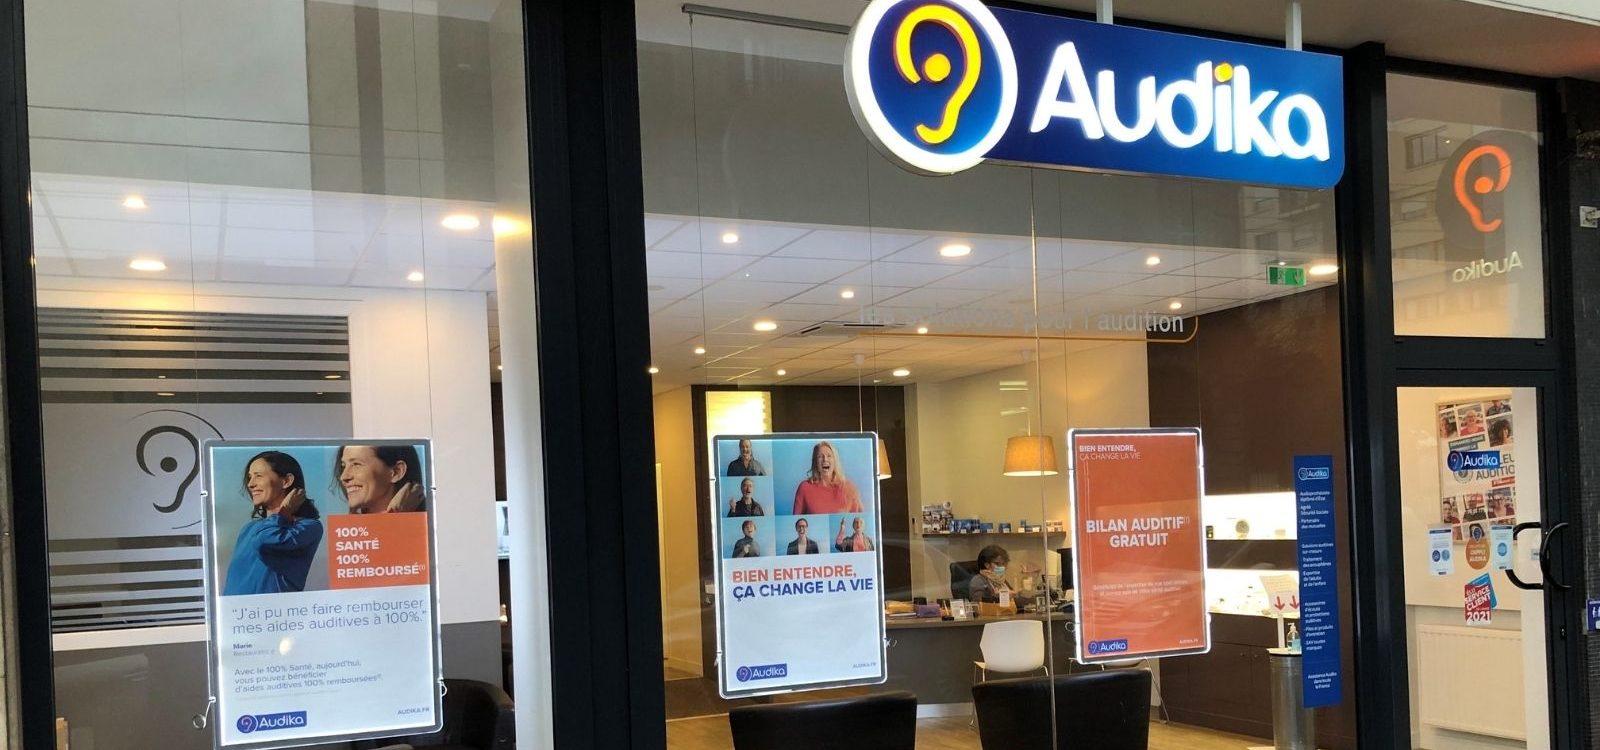 Audika, leader historique de la santé auditive, retient Profile  pour ses relations médias et influence